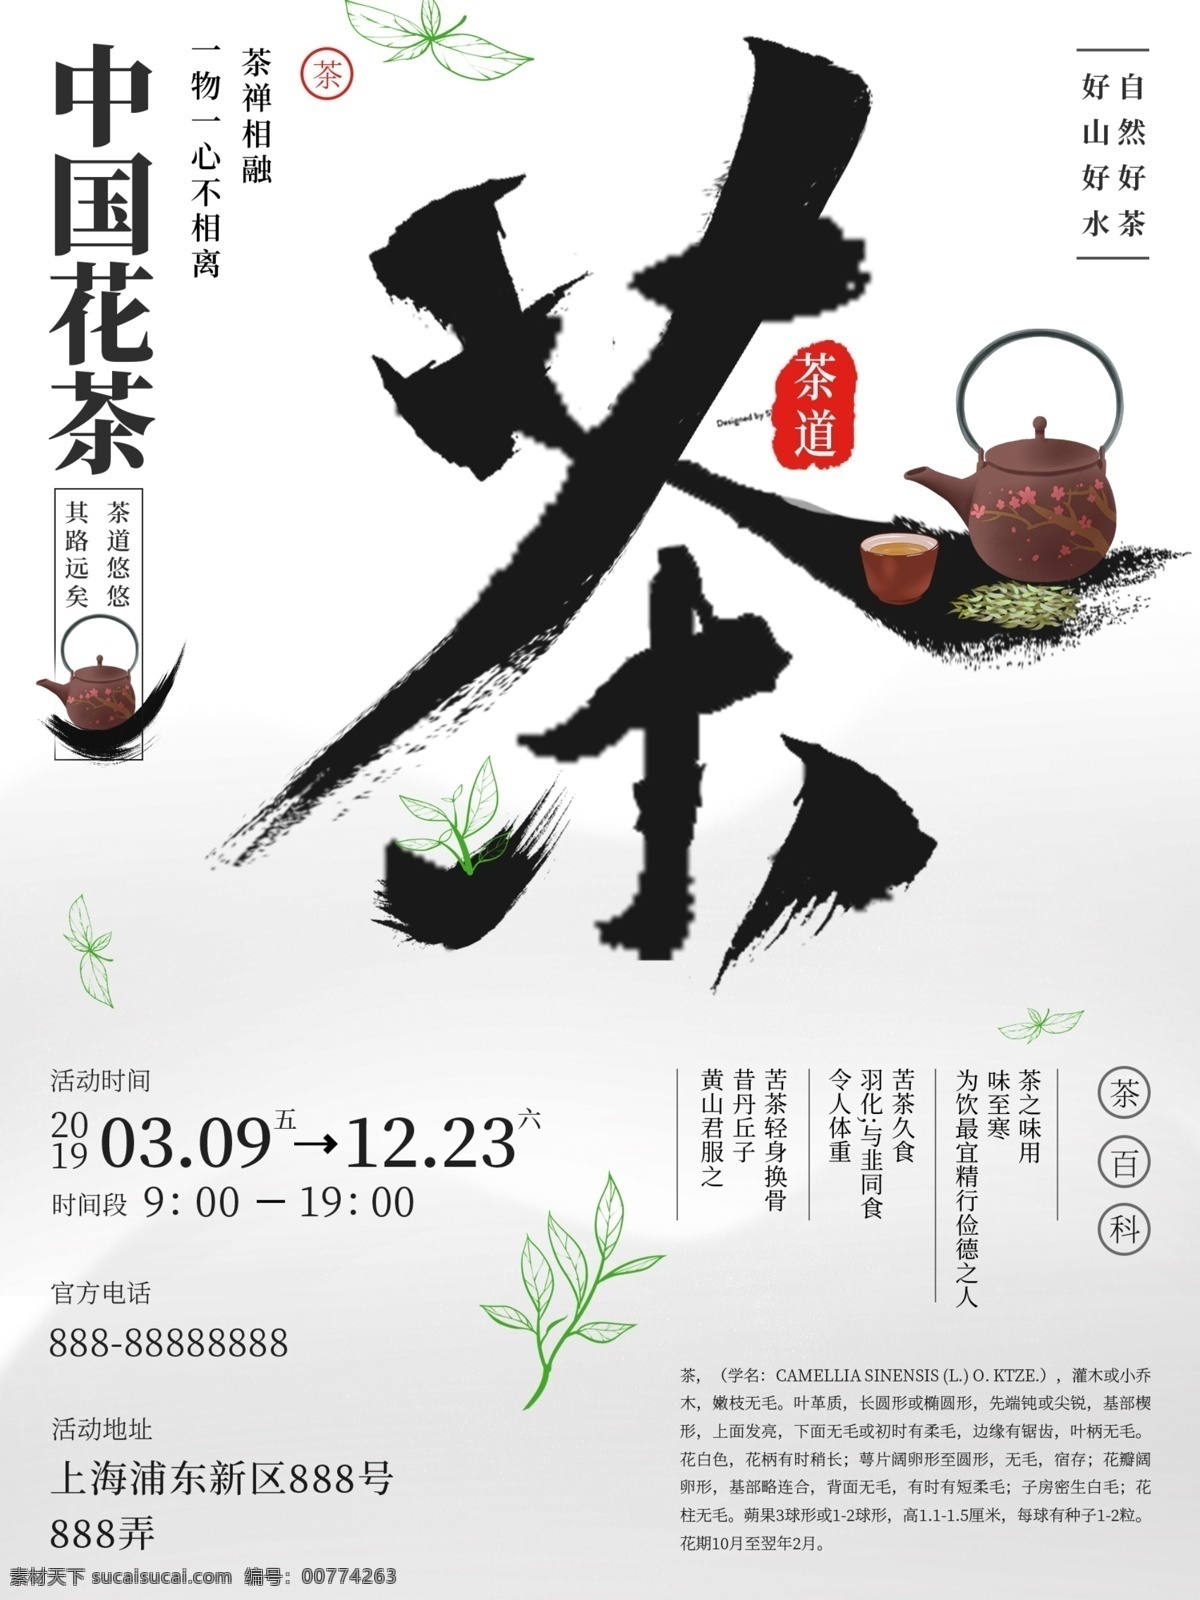 茶艺海报 中国风 中国 茶艺 宣传 海报 茶道 精通 品茶